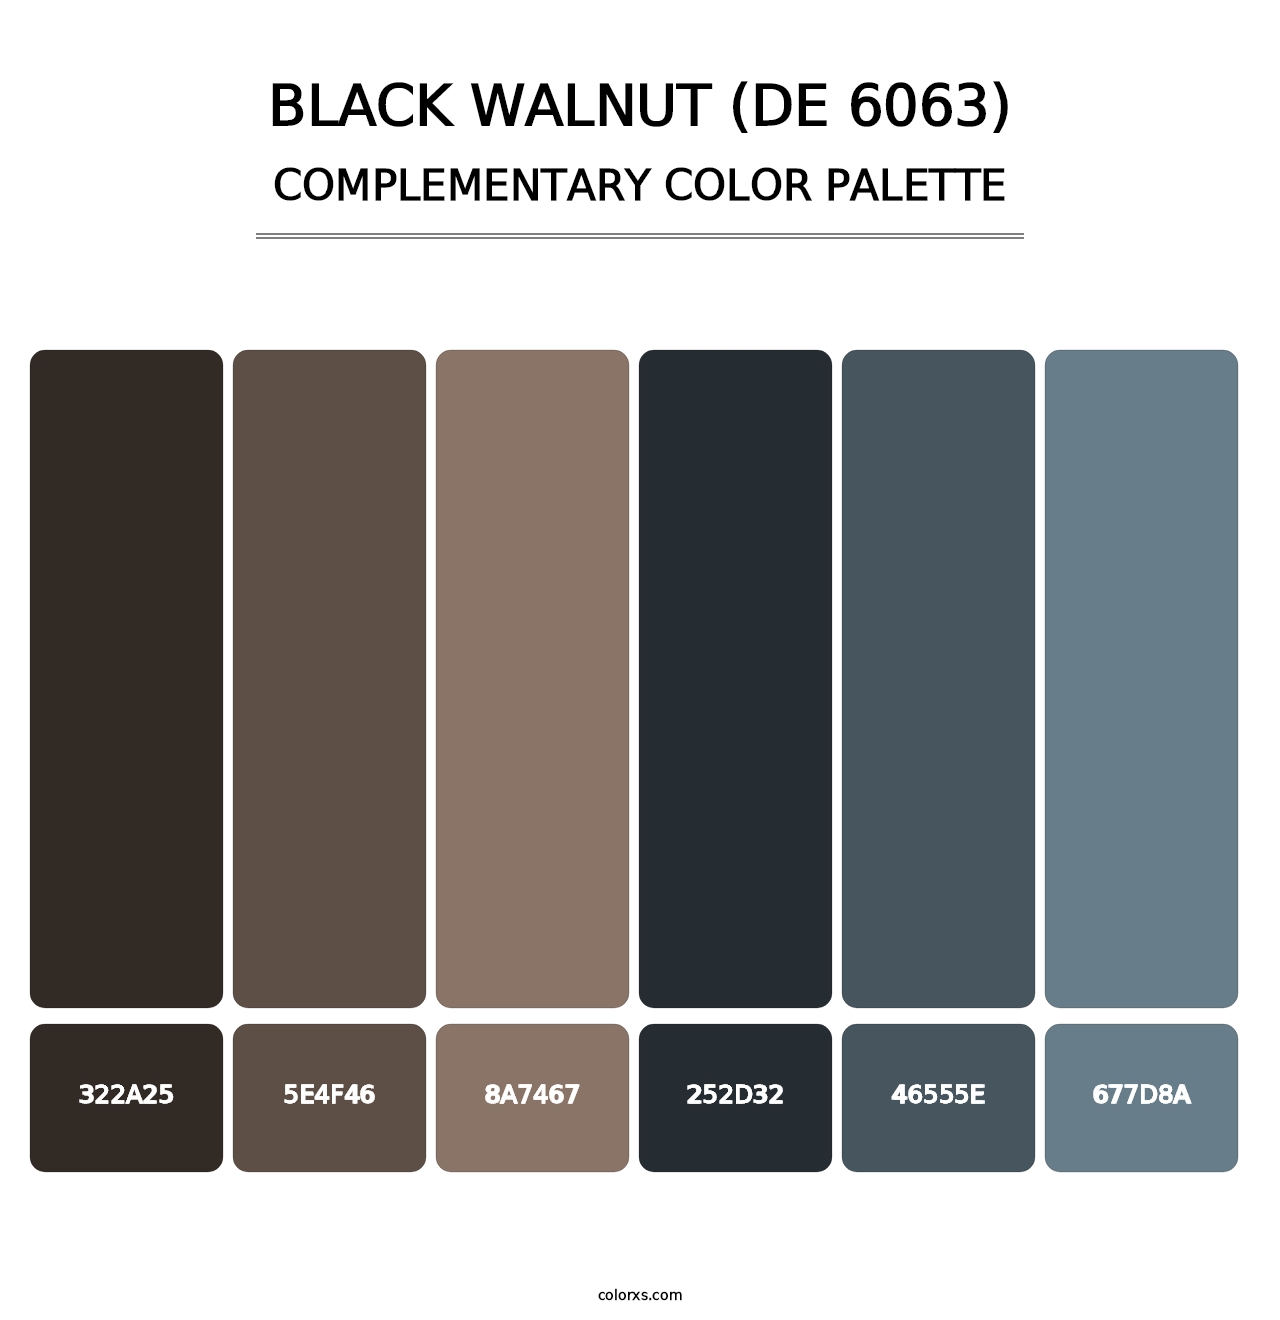 Black Walnut (DE 6063) - Complementary Color Palette